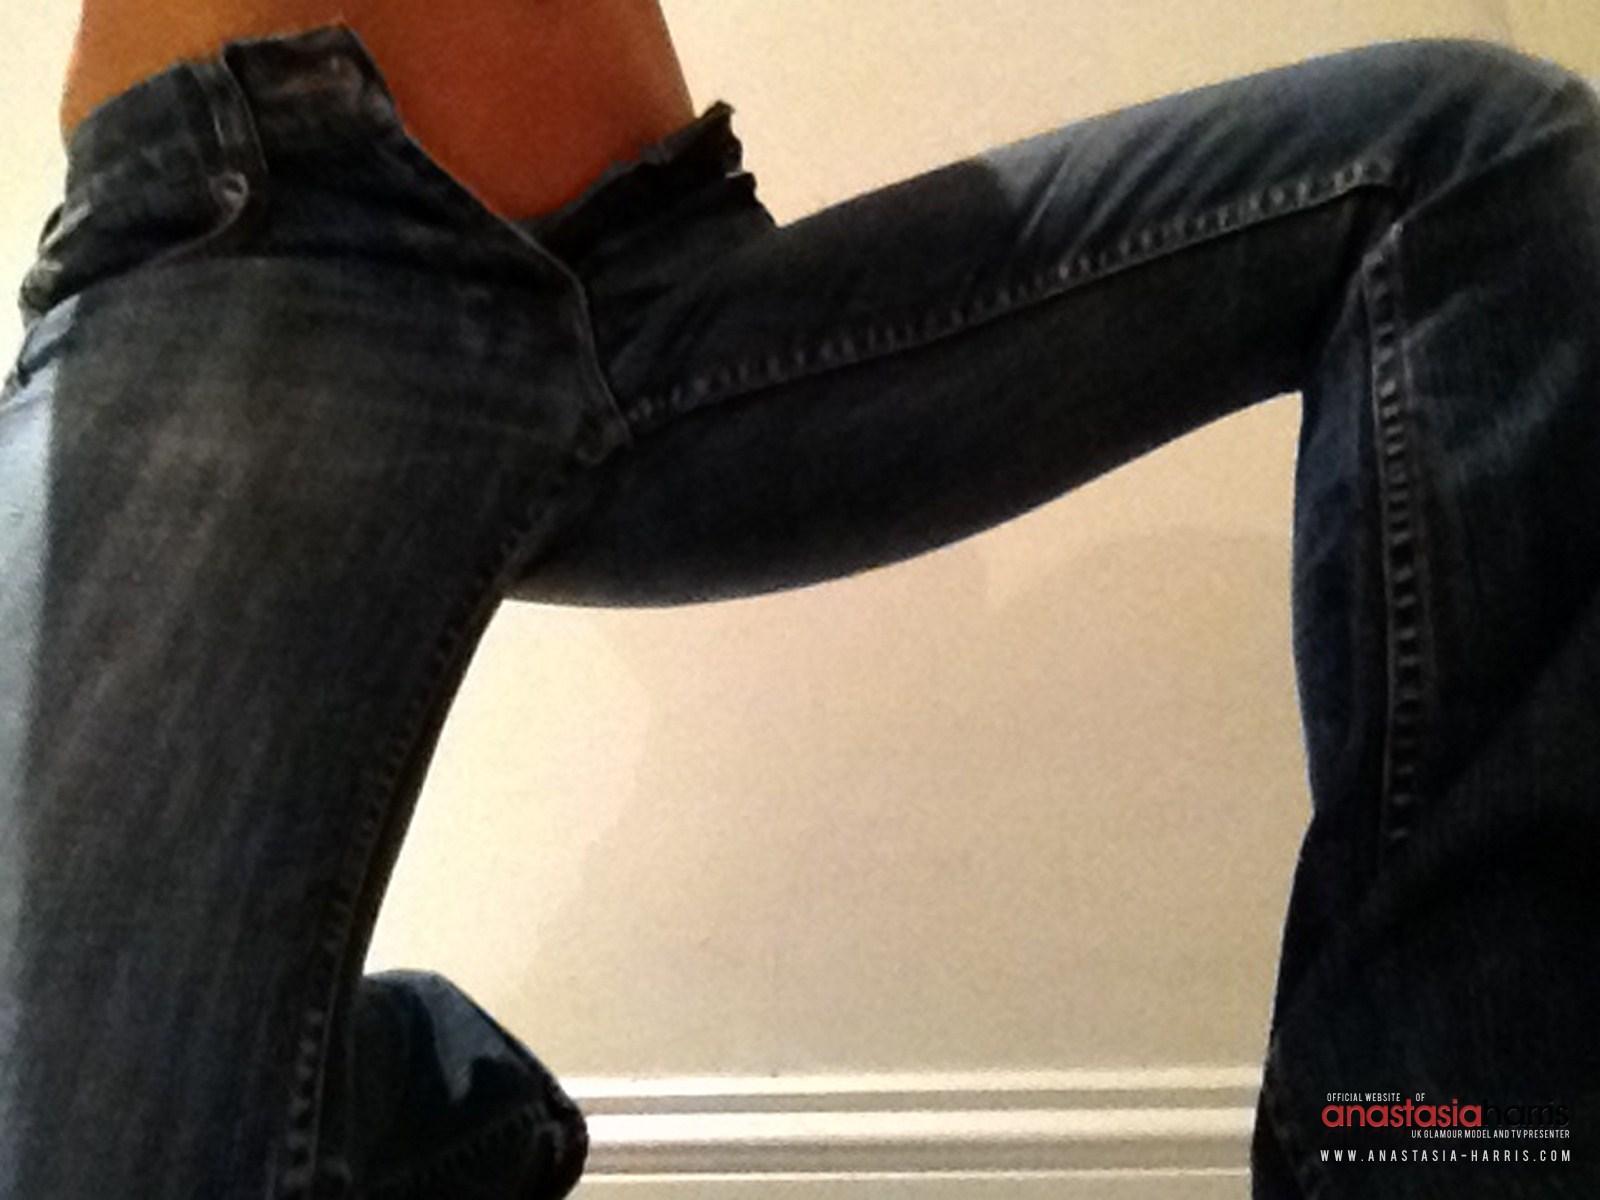 Anastasia Harris spielt mit ihrer engen Jeans und schält sie aus
 #53126496